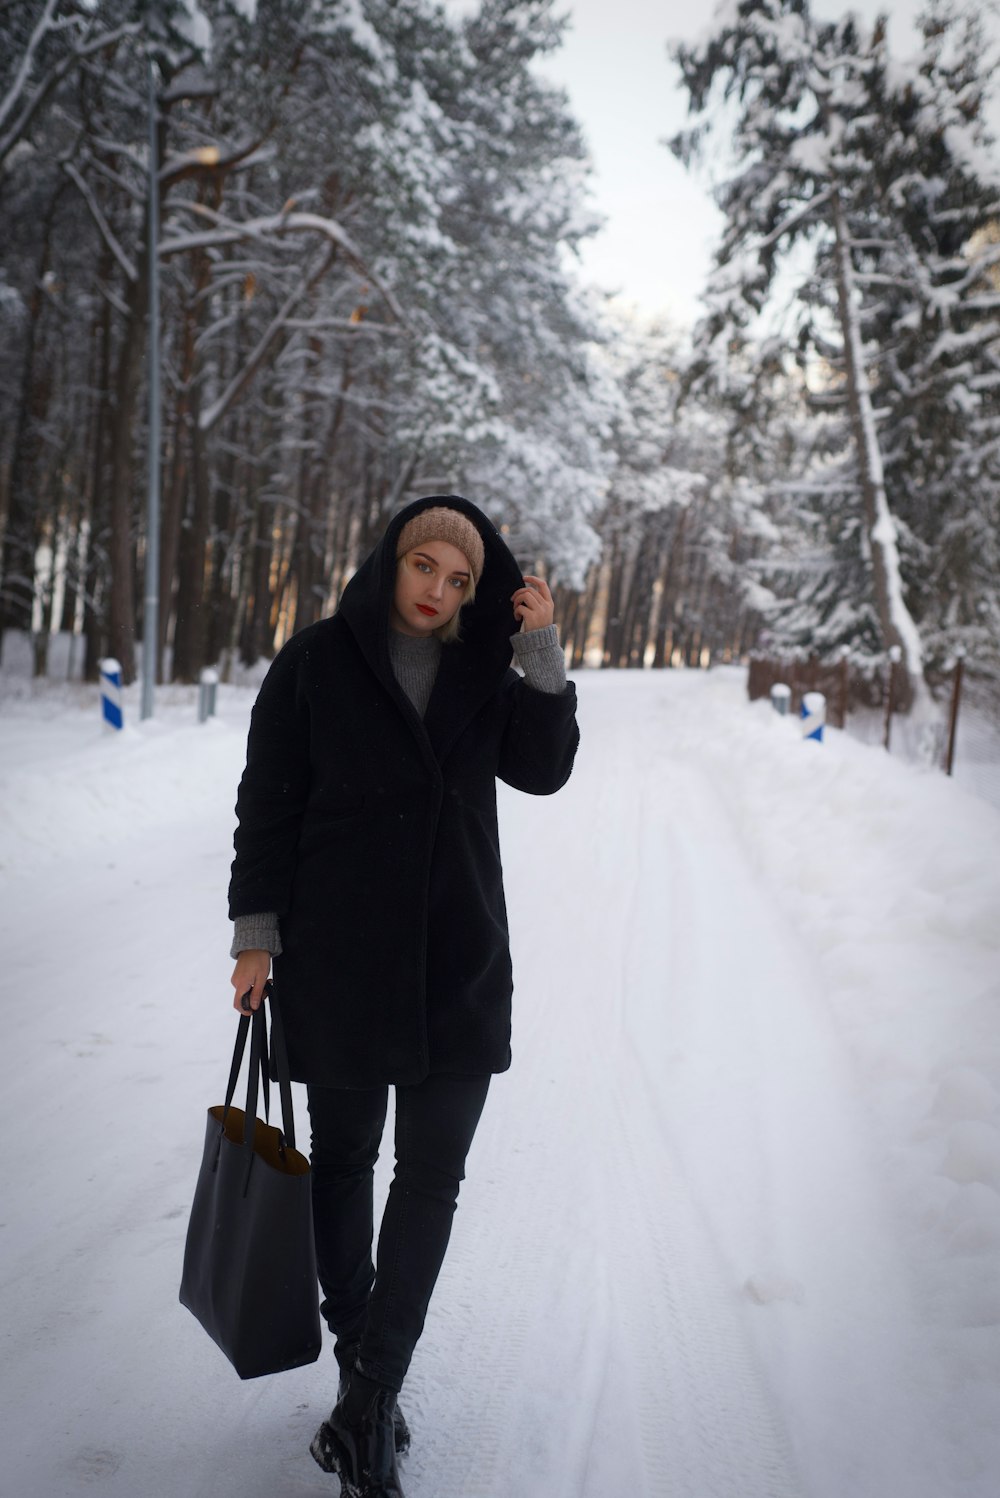 Eine Person, die mit einer Tasche im Schnee spazieren geht